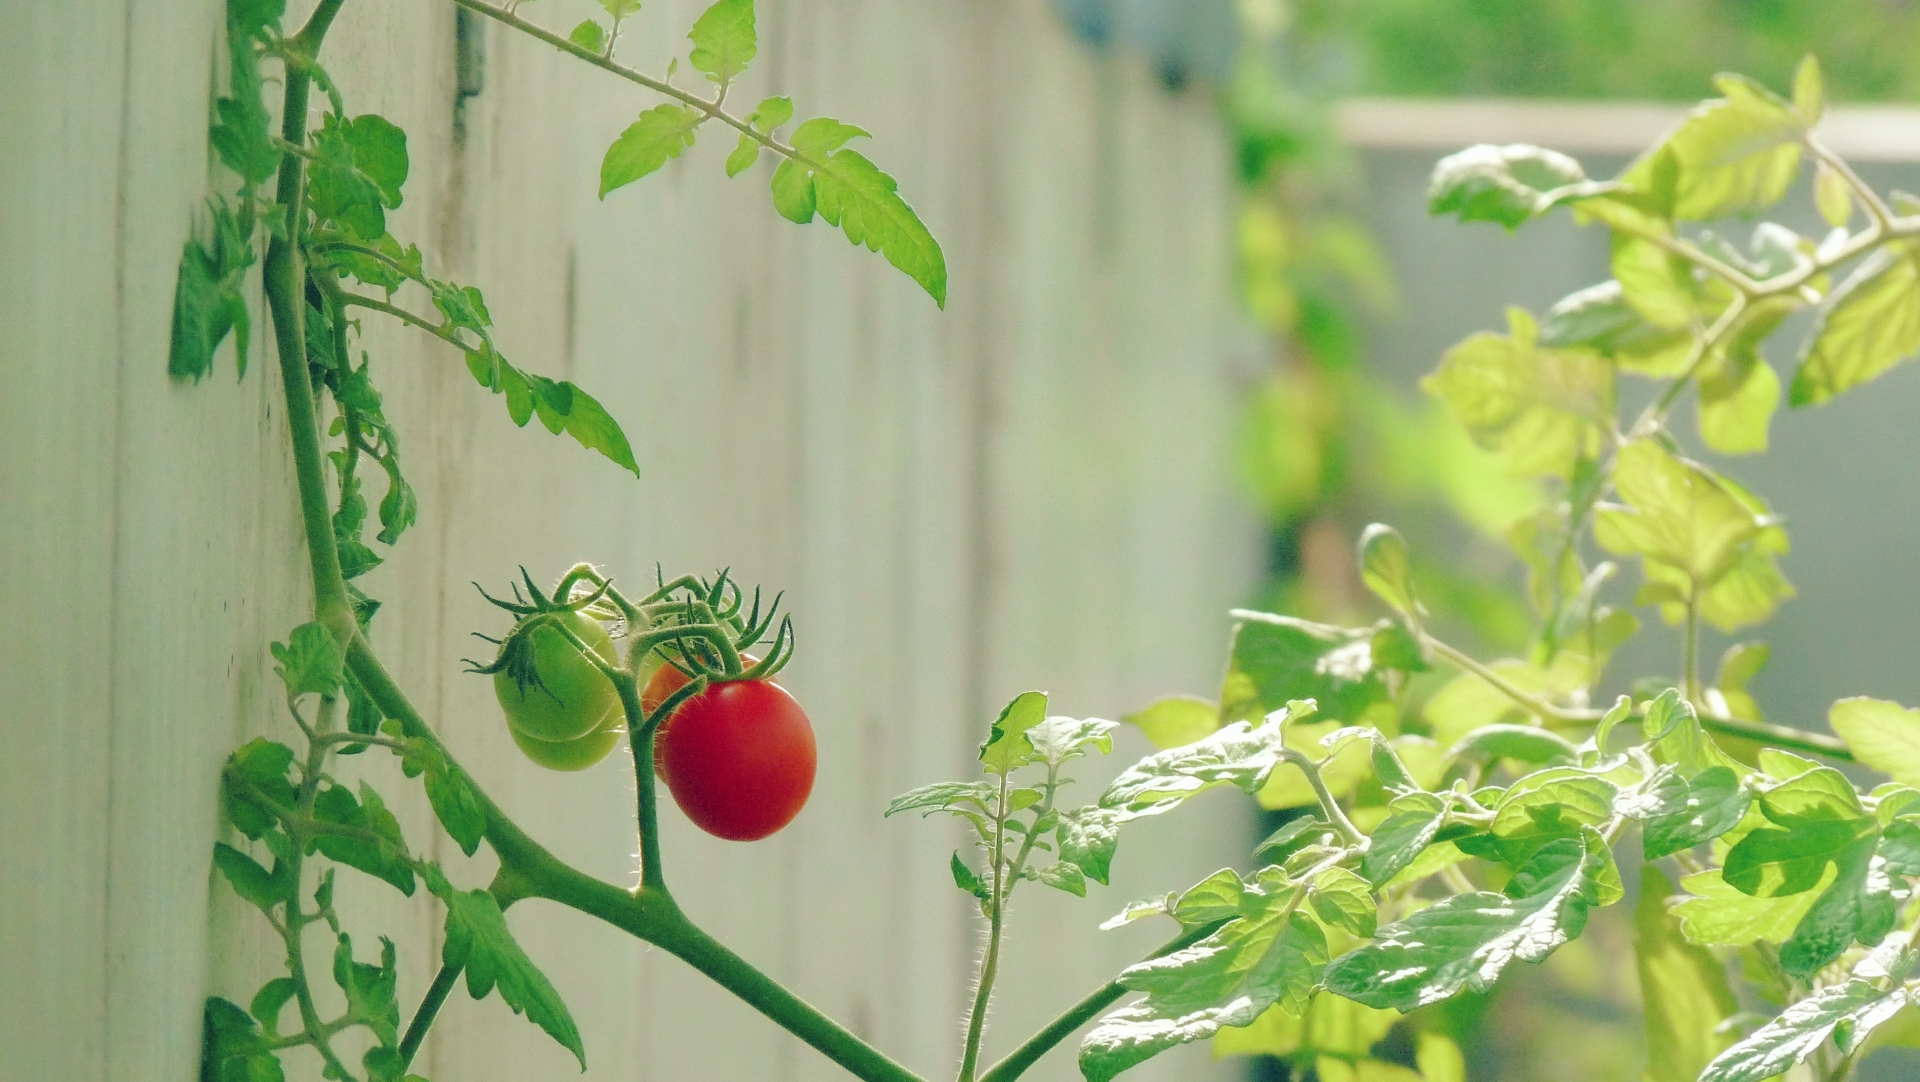 ミニトマトの葉っぱが白い原因と対策・うどんこ病とハモグリバエ